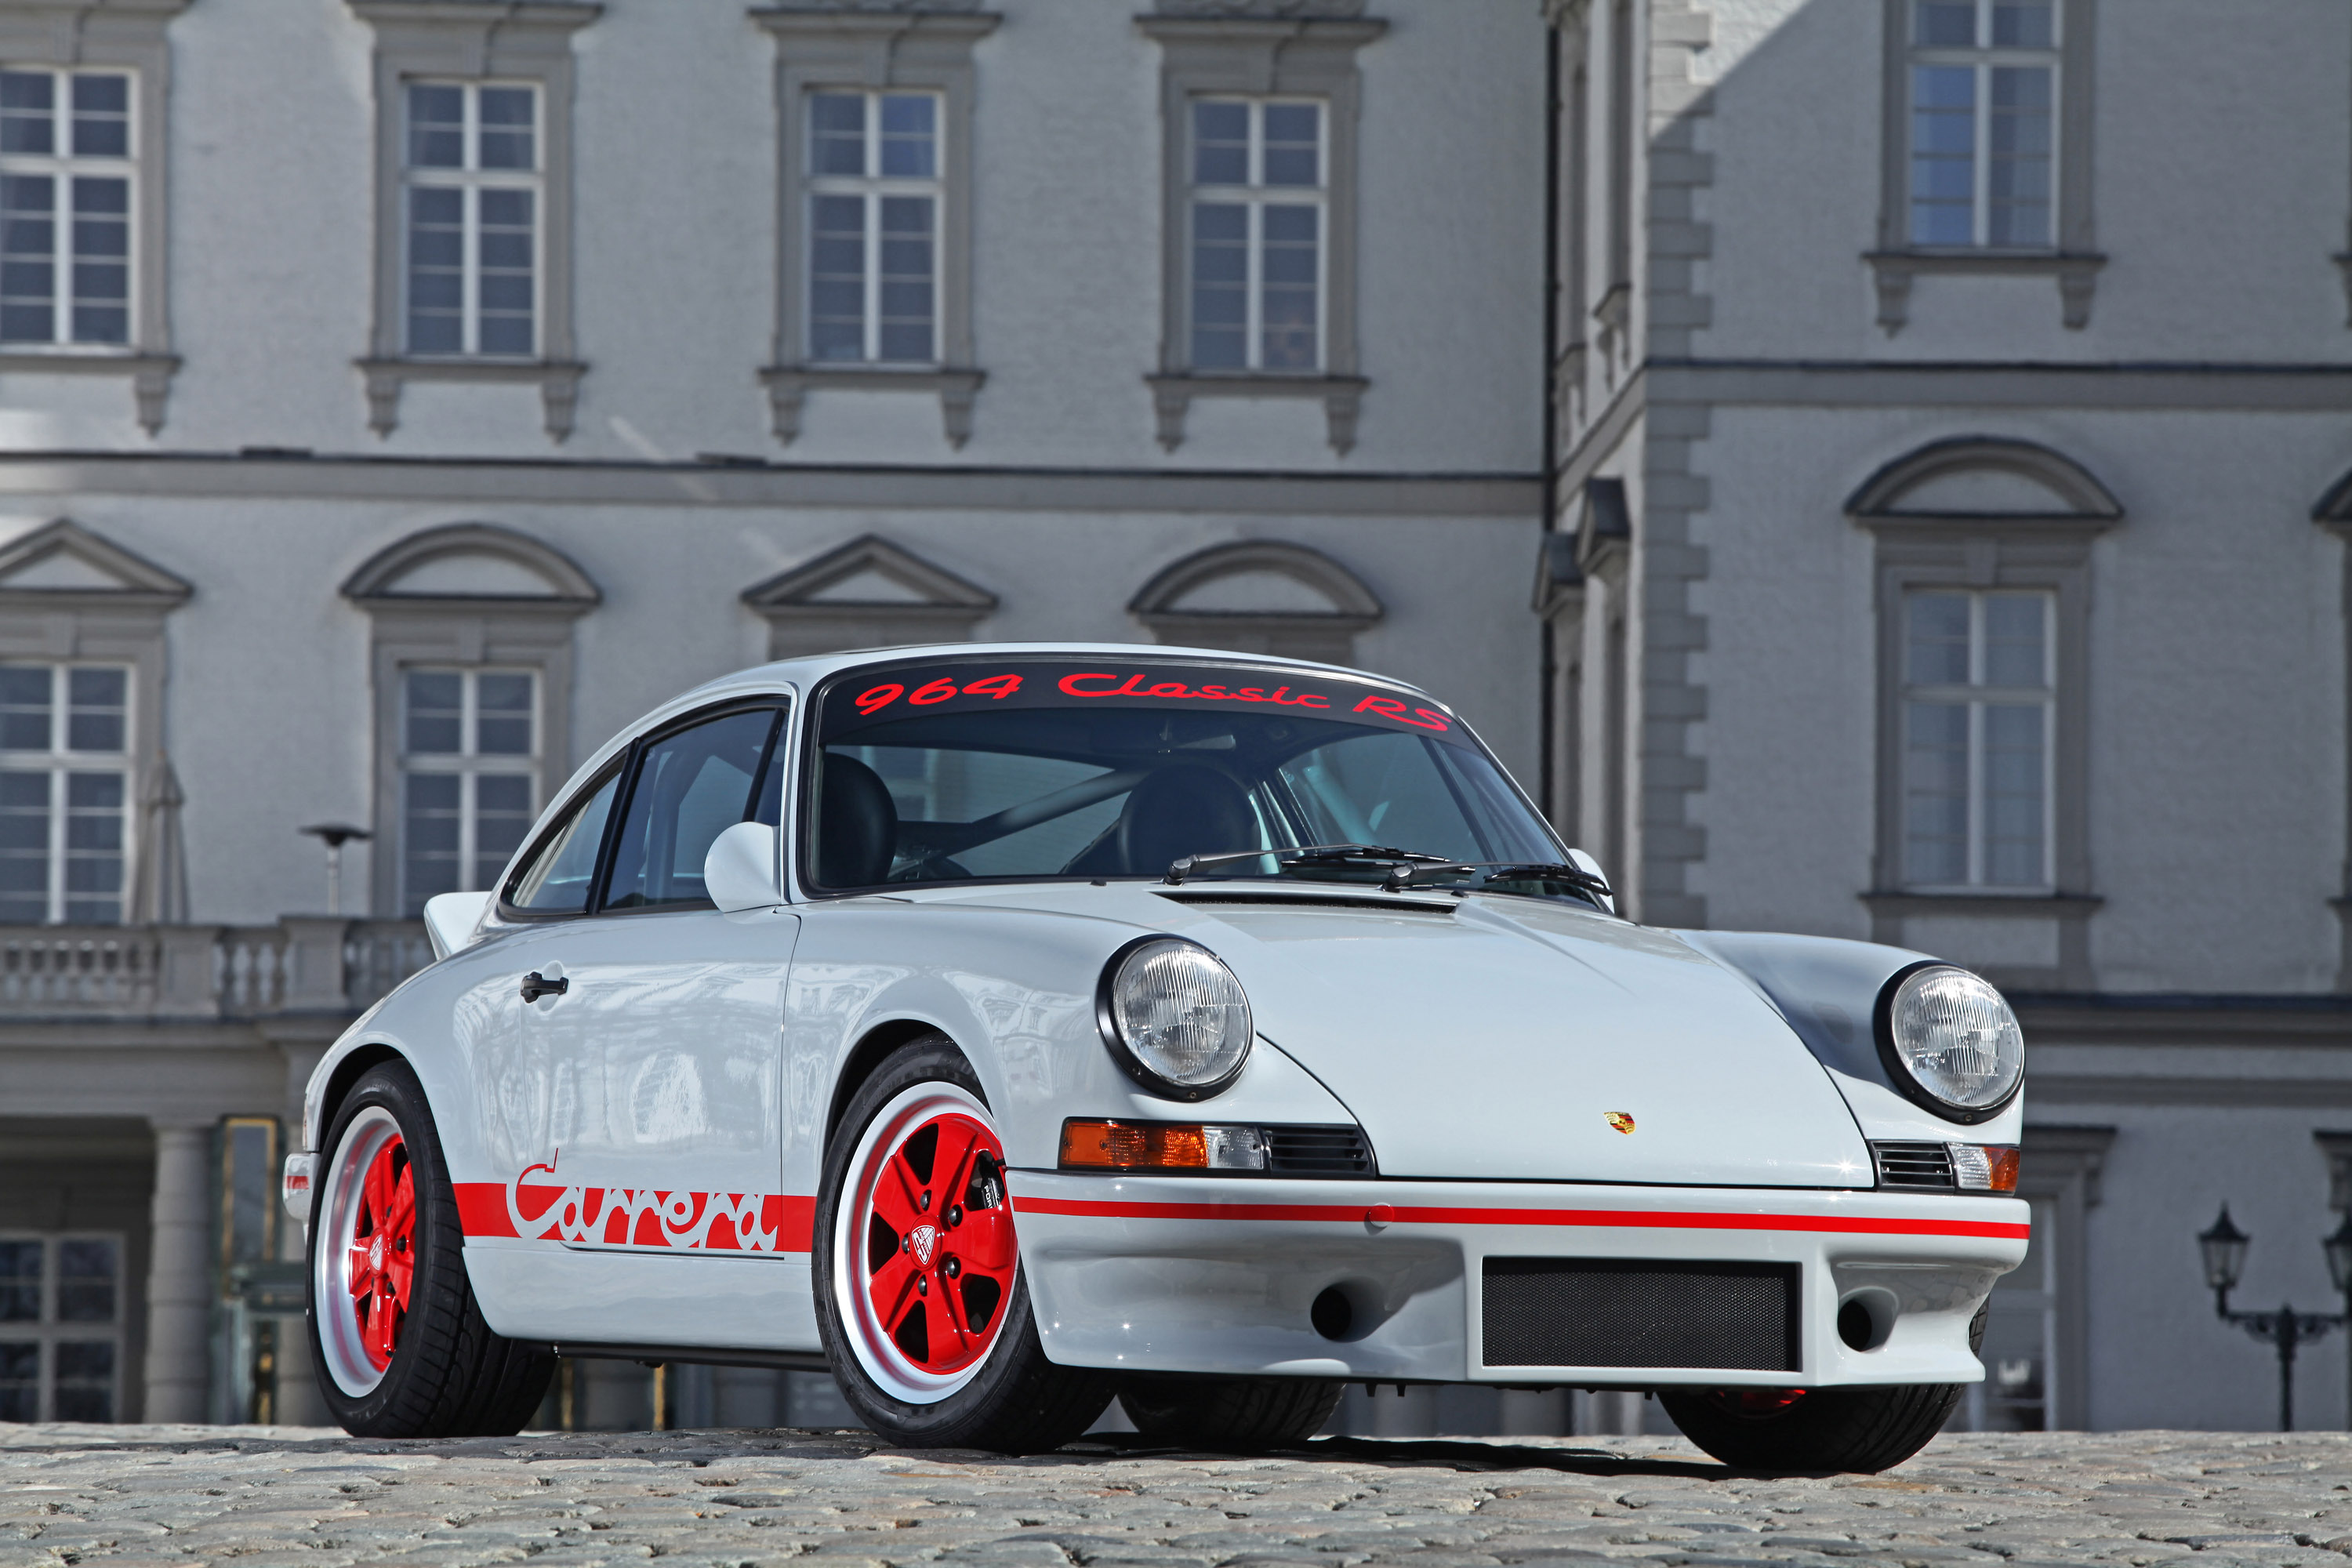 Descargar fondos de escritorio de Porsche 911 Carrera Rs HD